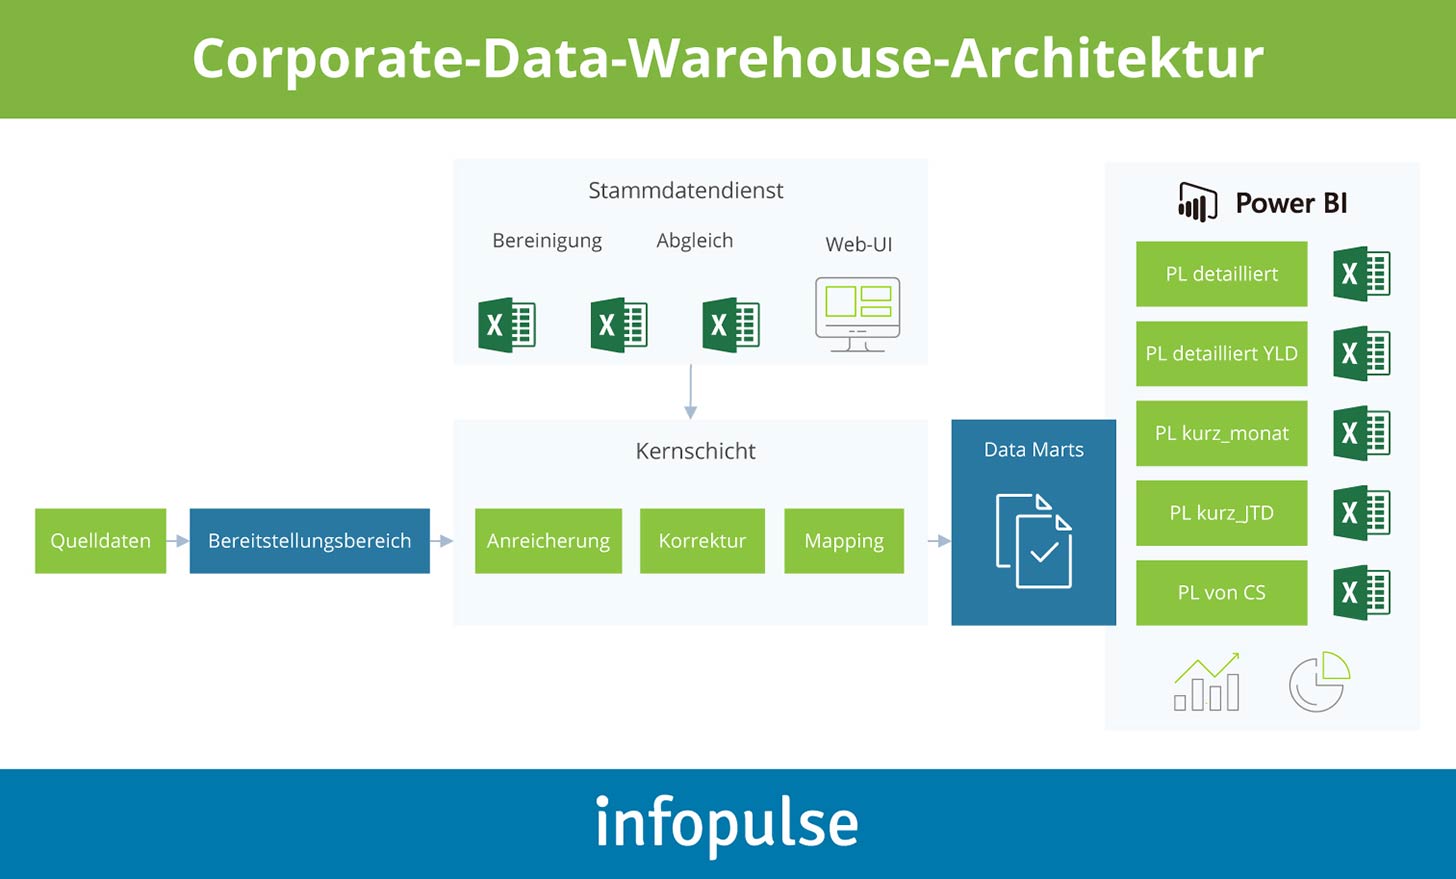 Corporate-Data-Warehouse mit Stammdatenservices für Reiseeinzelhandelsunternehmen - Infopulse - 2